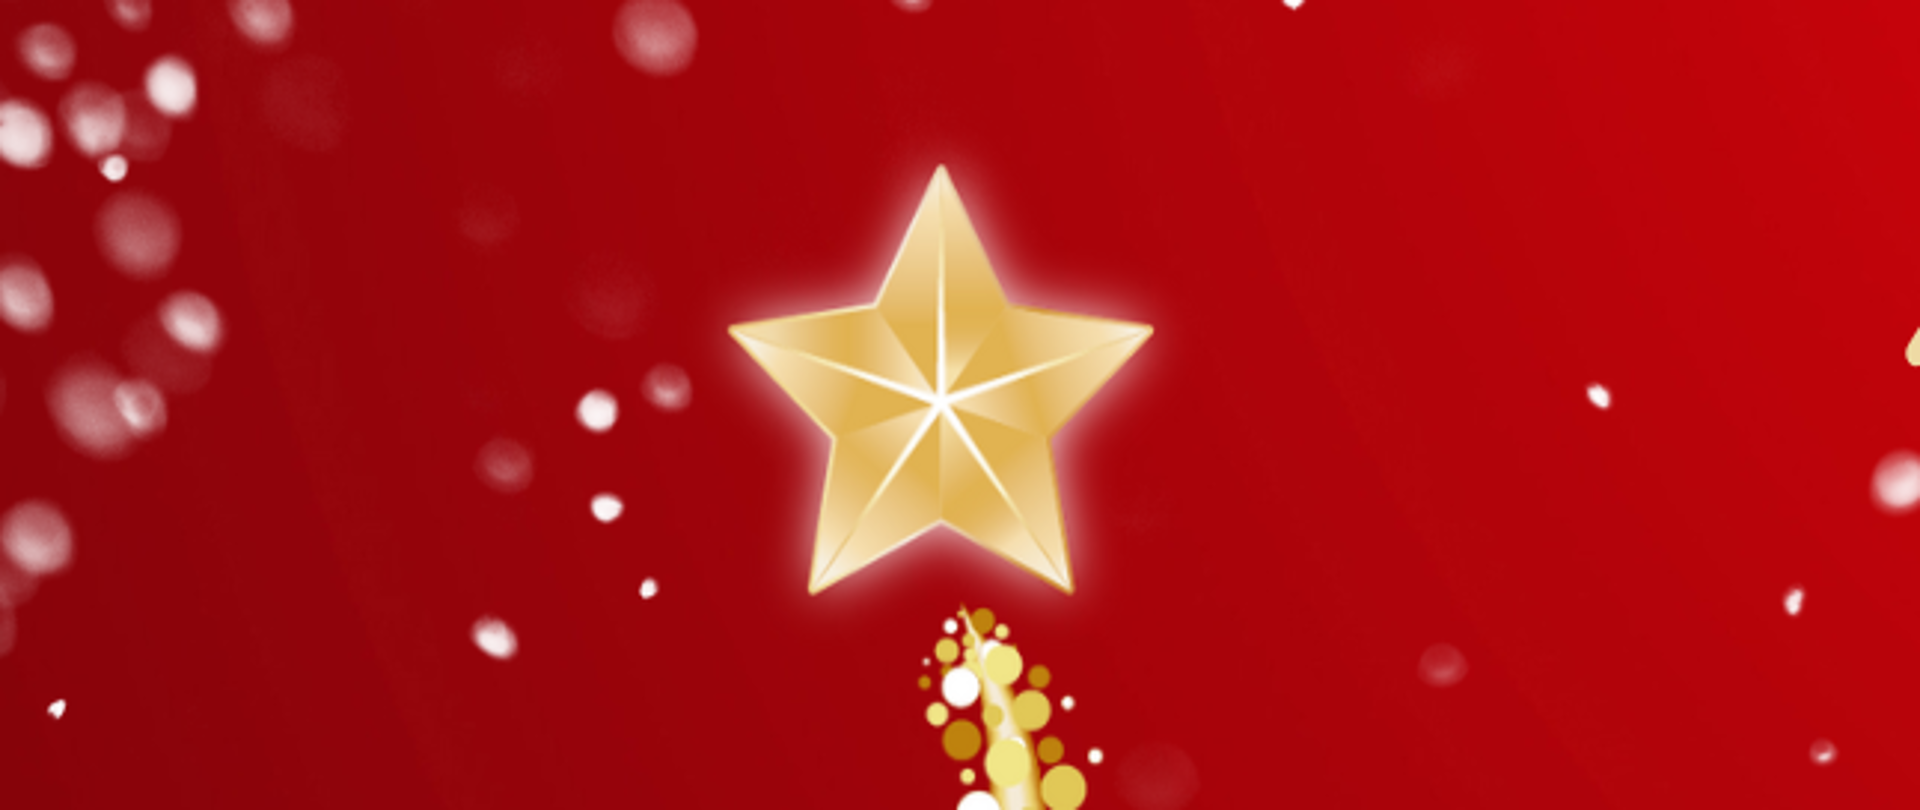 Grafika na czerwonym tle z ikoną choinki w kolorze złotem po lewej stronie. logo szkoły w prawym dolnym rogu i tekstem życzeń świątecznych od dyrektora, nauczycieli i pracowników szkoły.